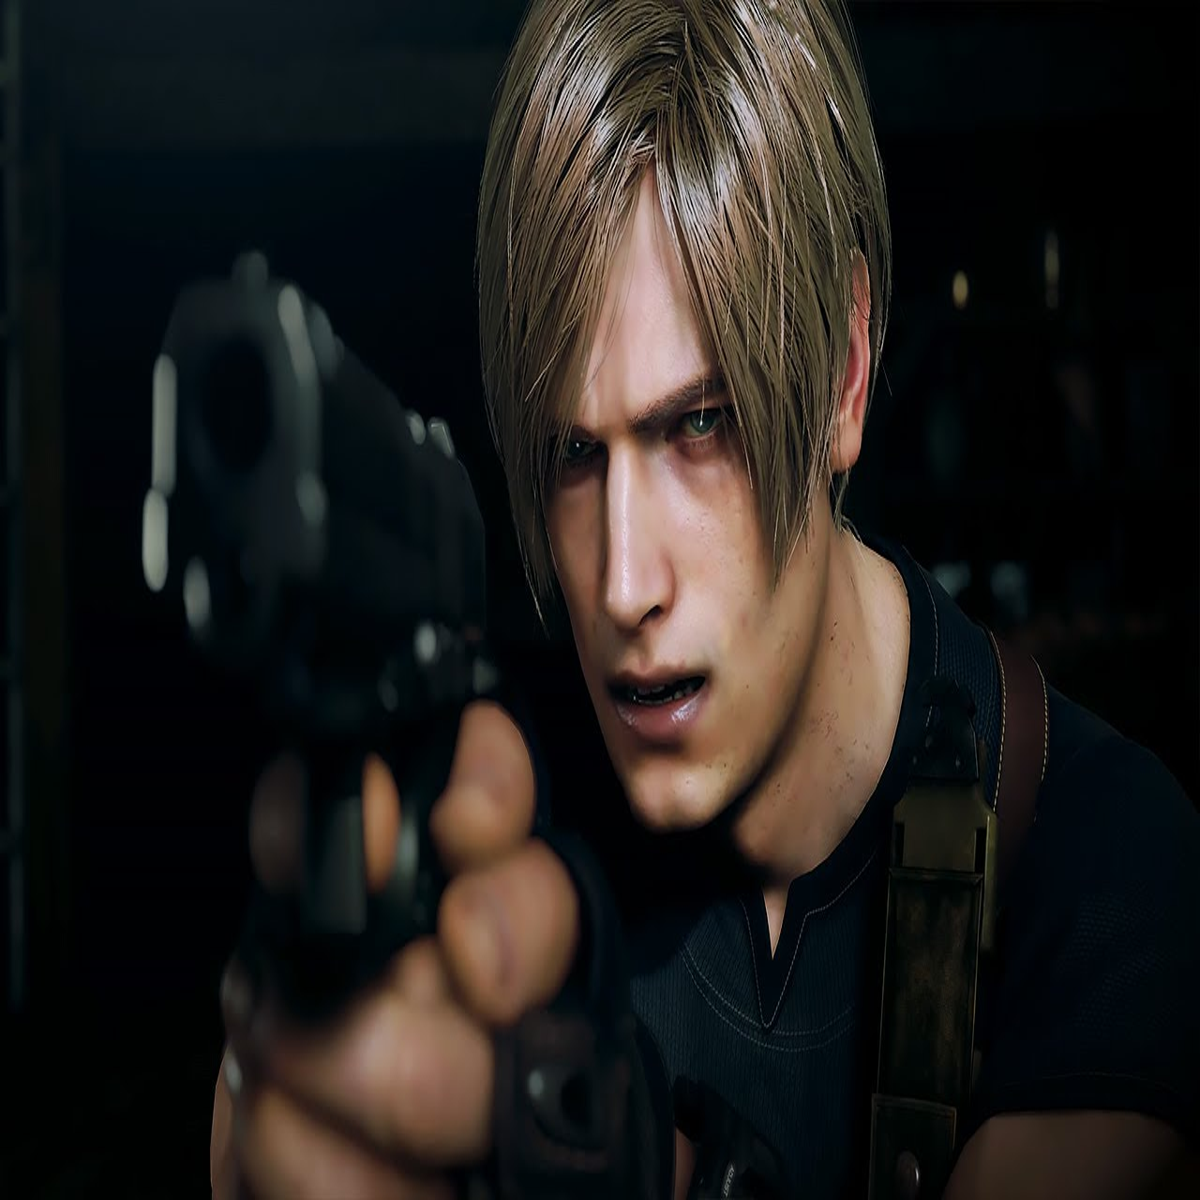 Remake de Resident Evil 4 é confirmado para PlayStation 4